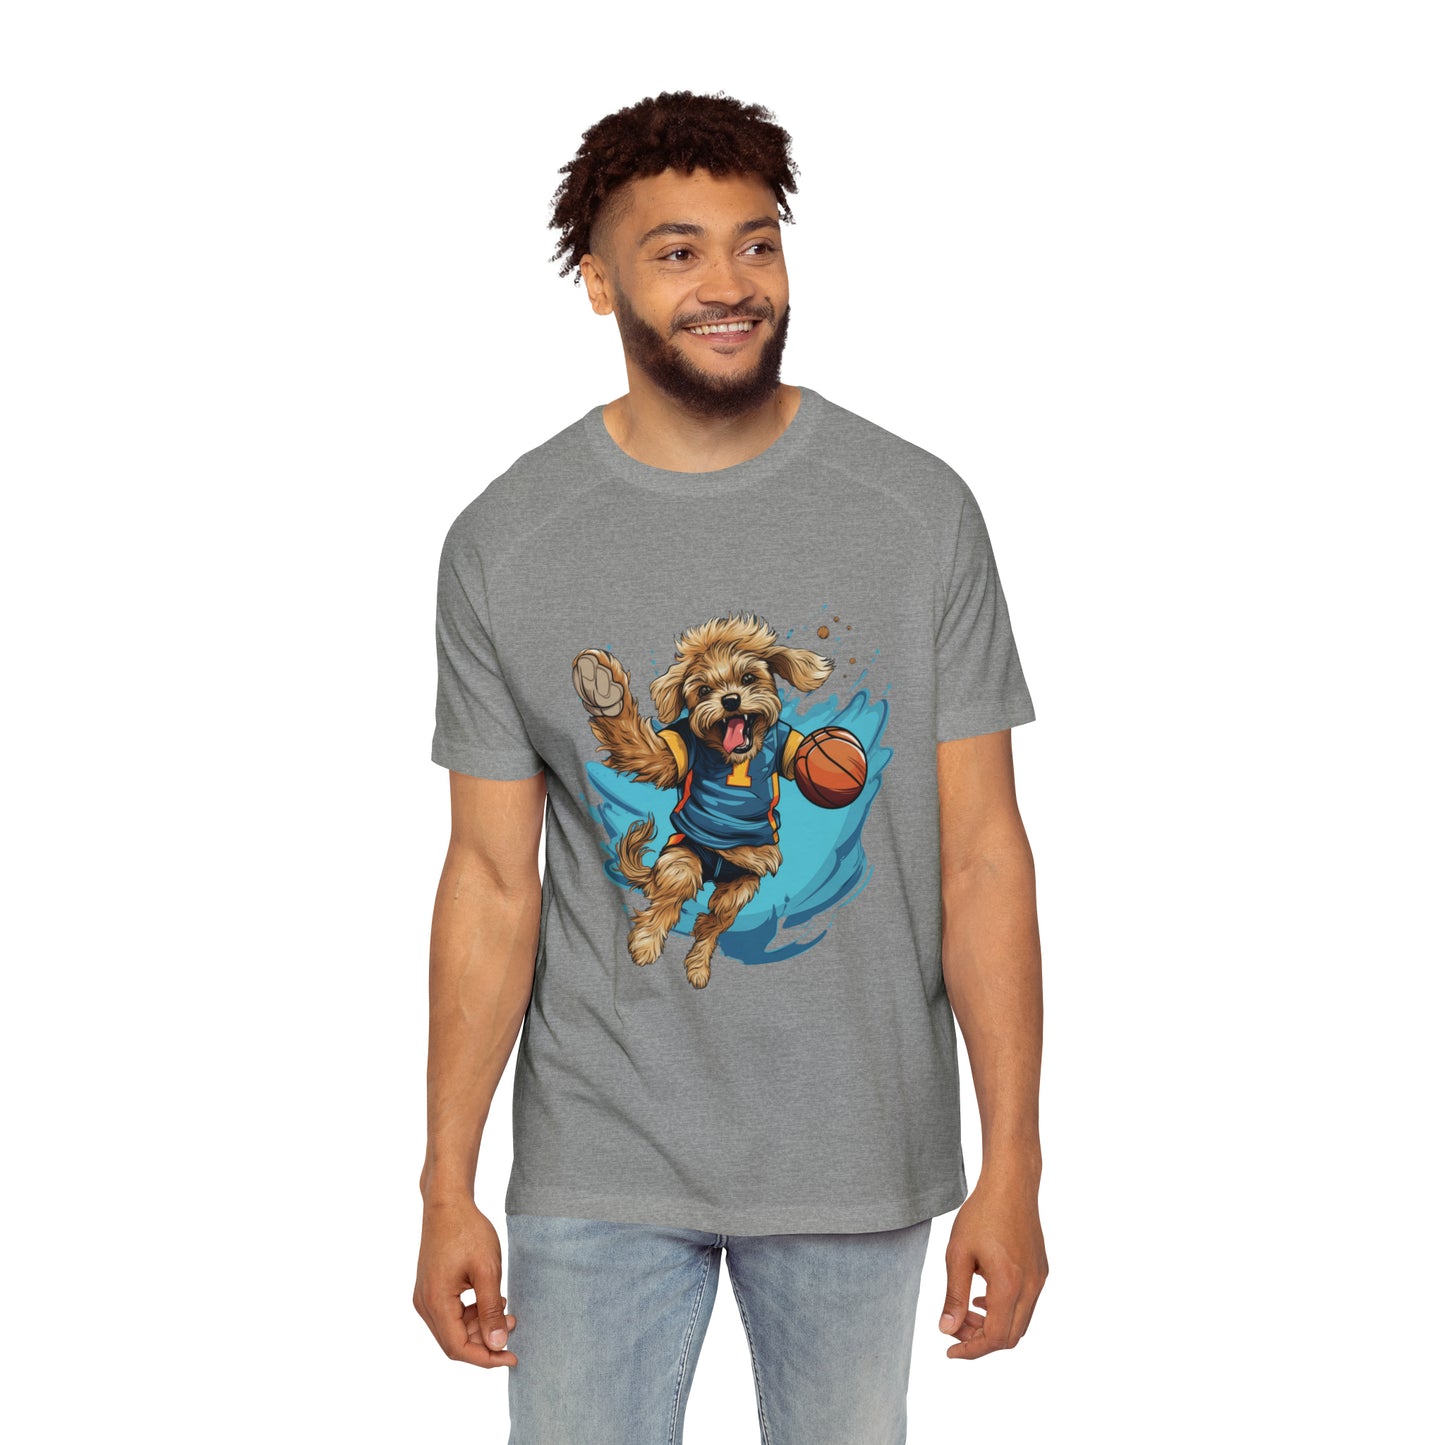 Men's Raglan T-Shirt - Pet dog